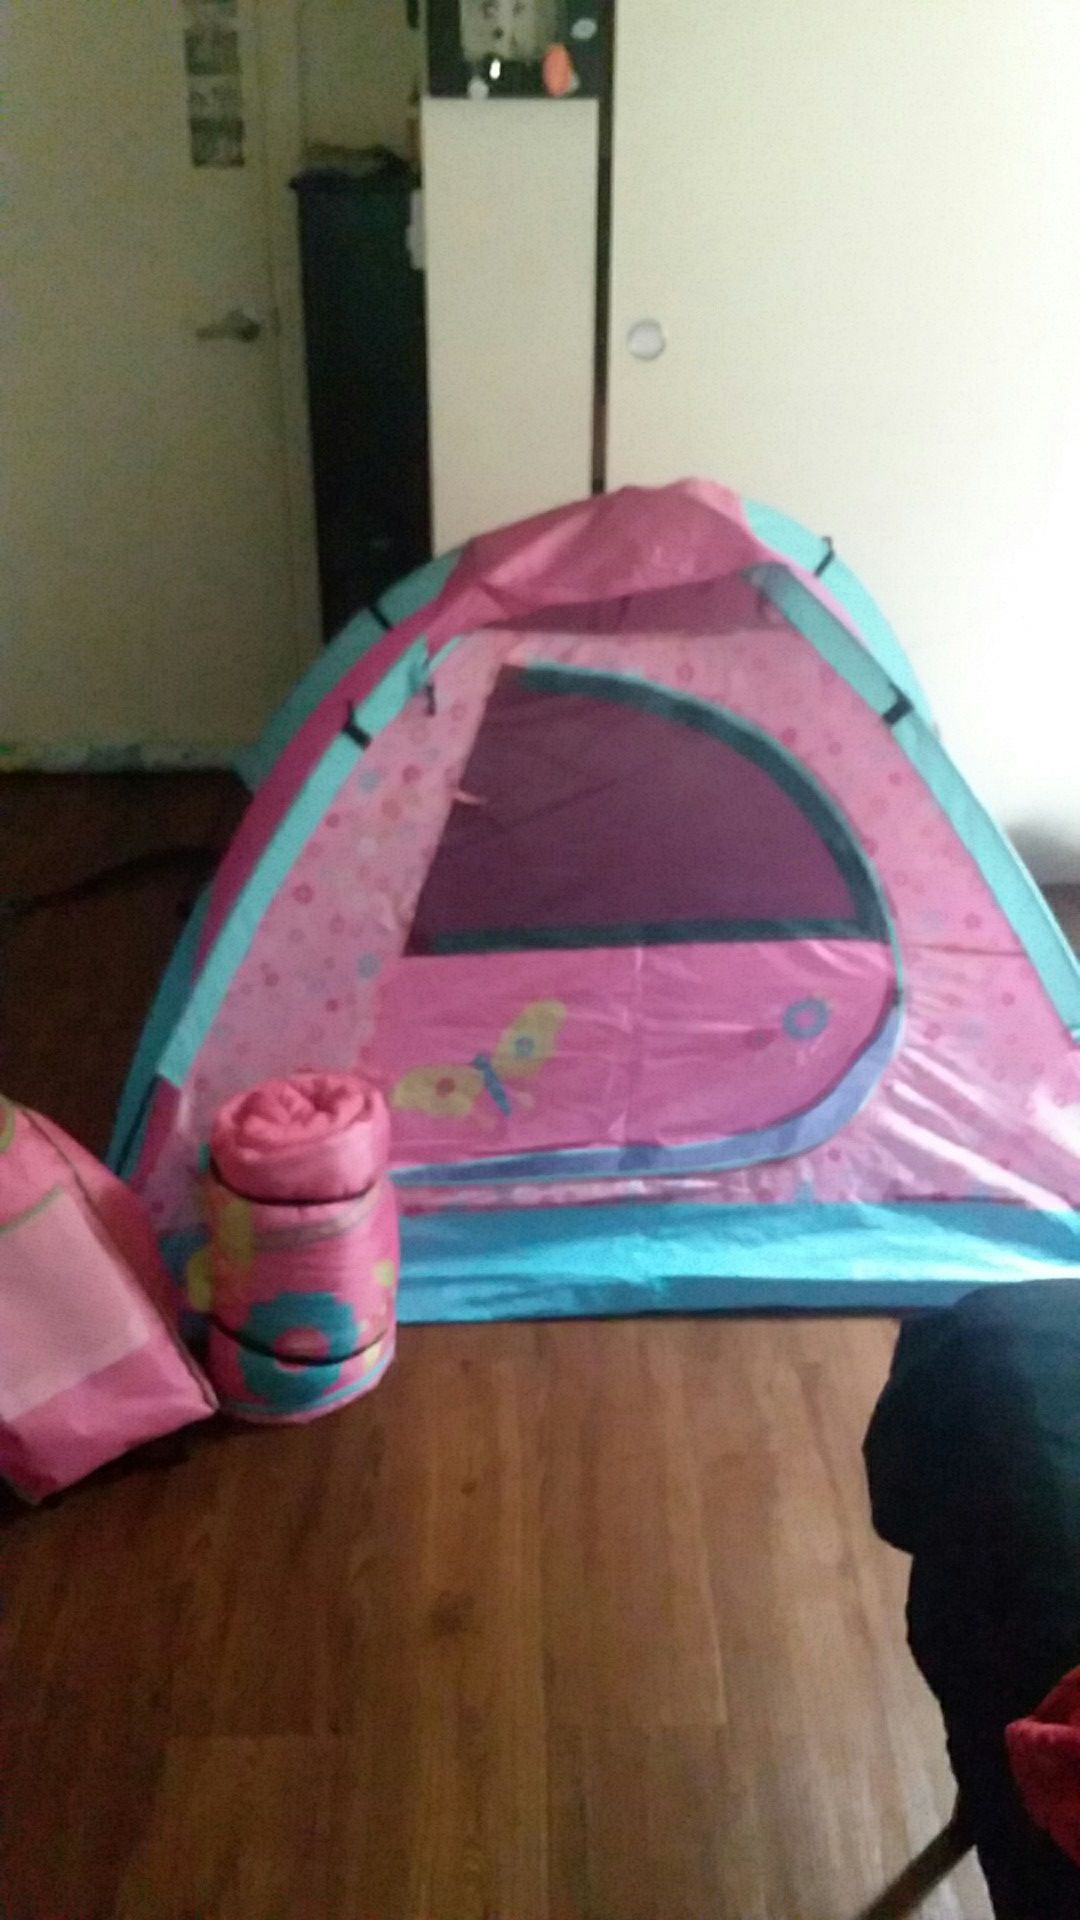 Tent and sleeping bag